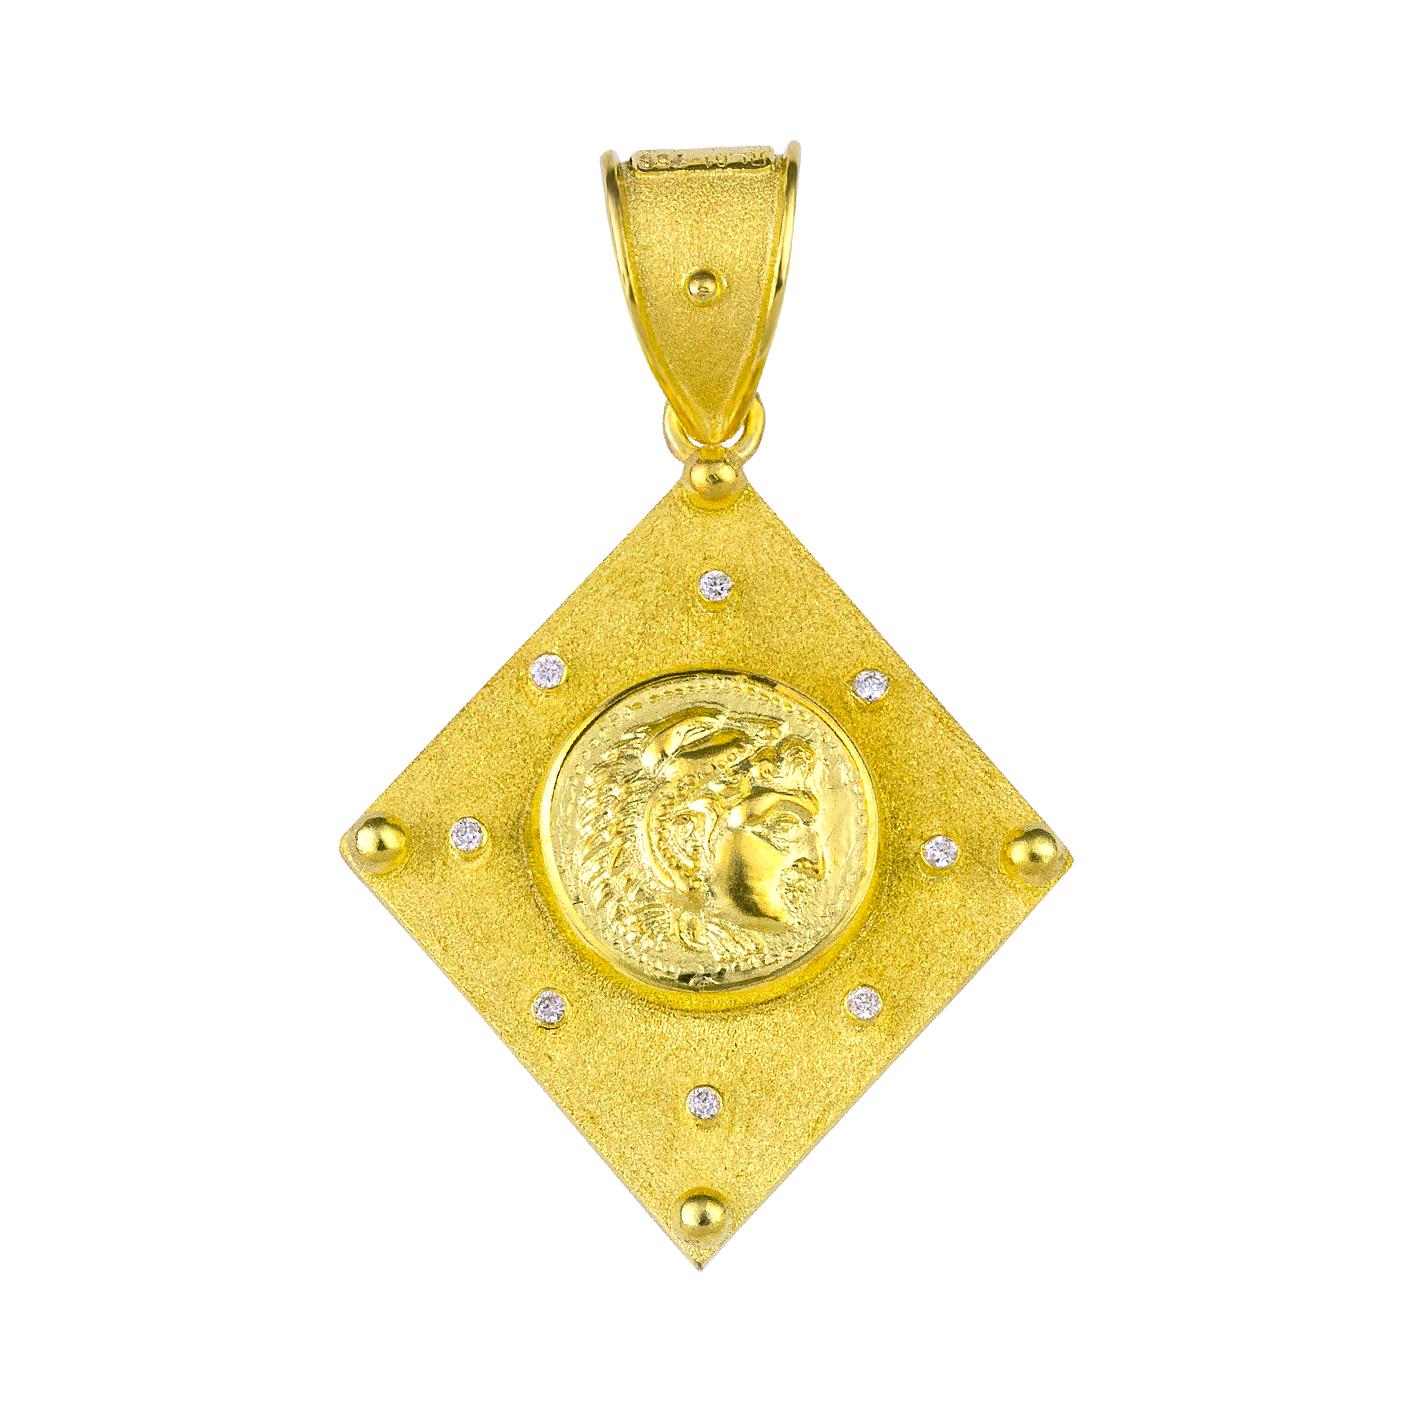 Pendentif enhancer en or jaune 18 carats fait main par le designer S.Georgios et fabriqué sur mesure. Il est décoré au microscope - avec un travail de granulation - des perles et des fils sur les deux côtés. Le fond du pendentif présente un